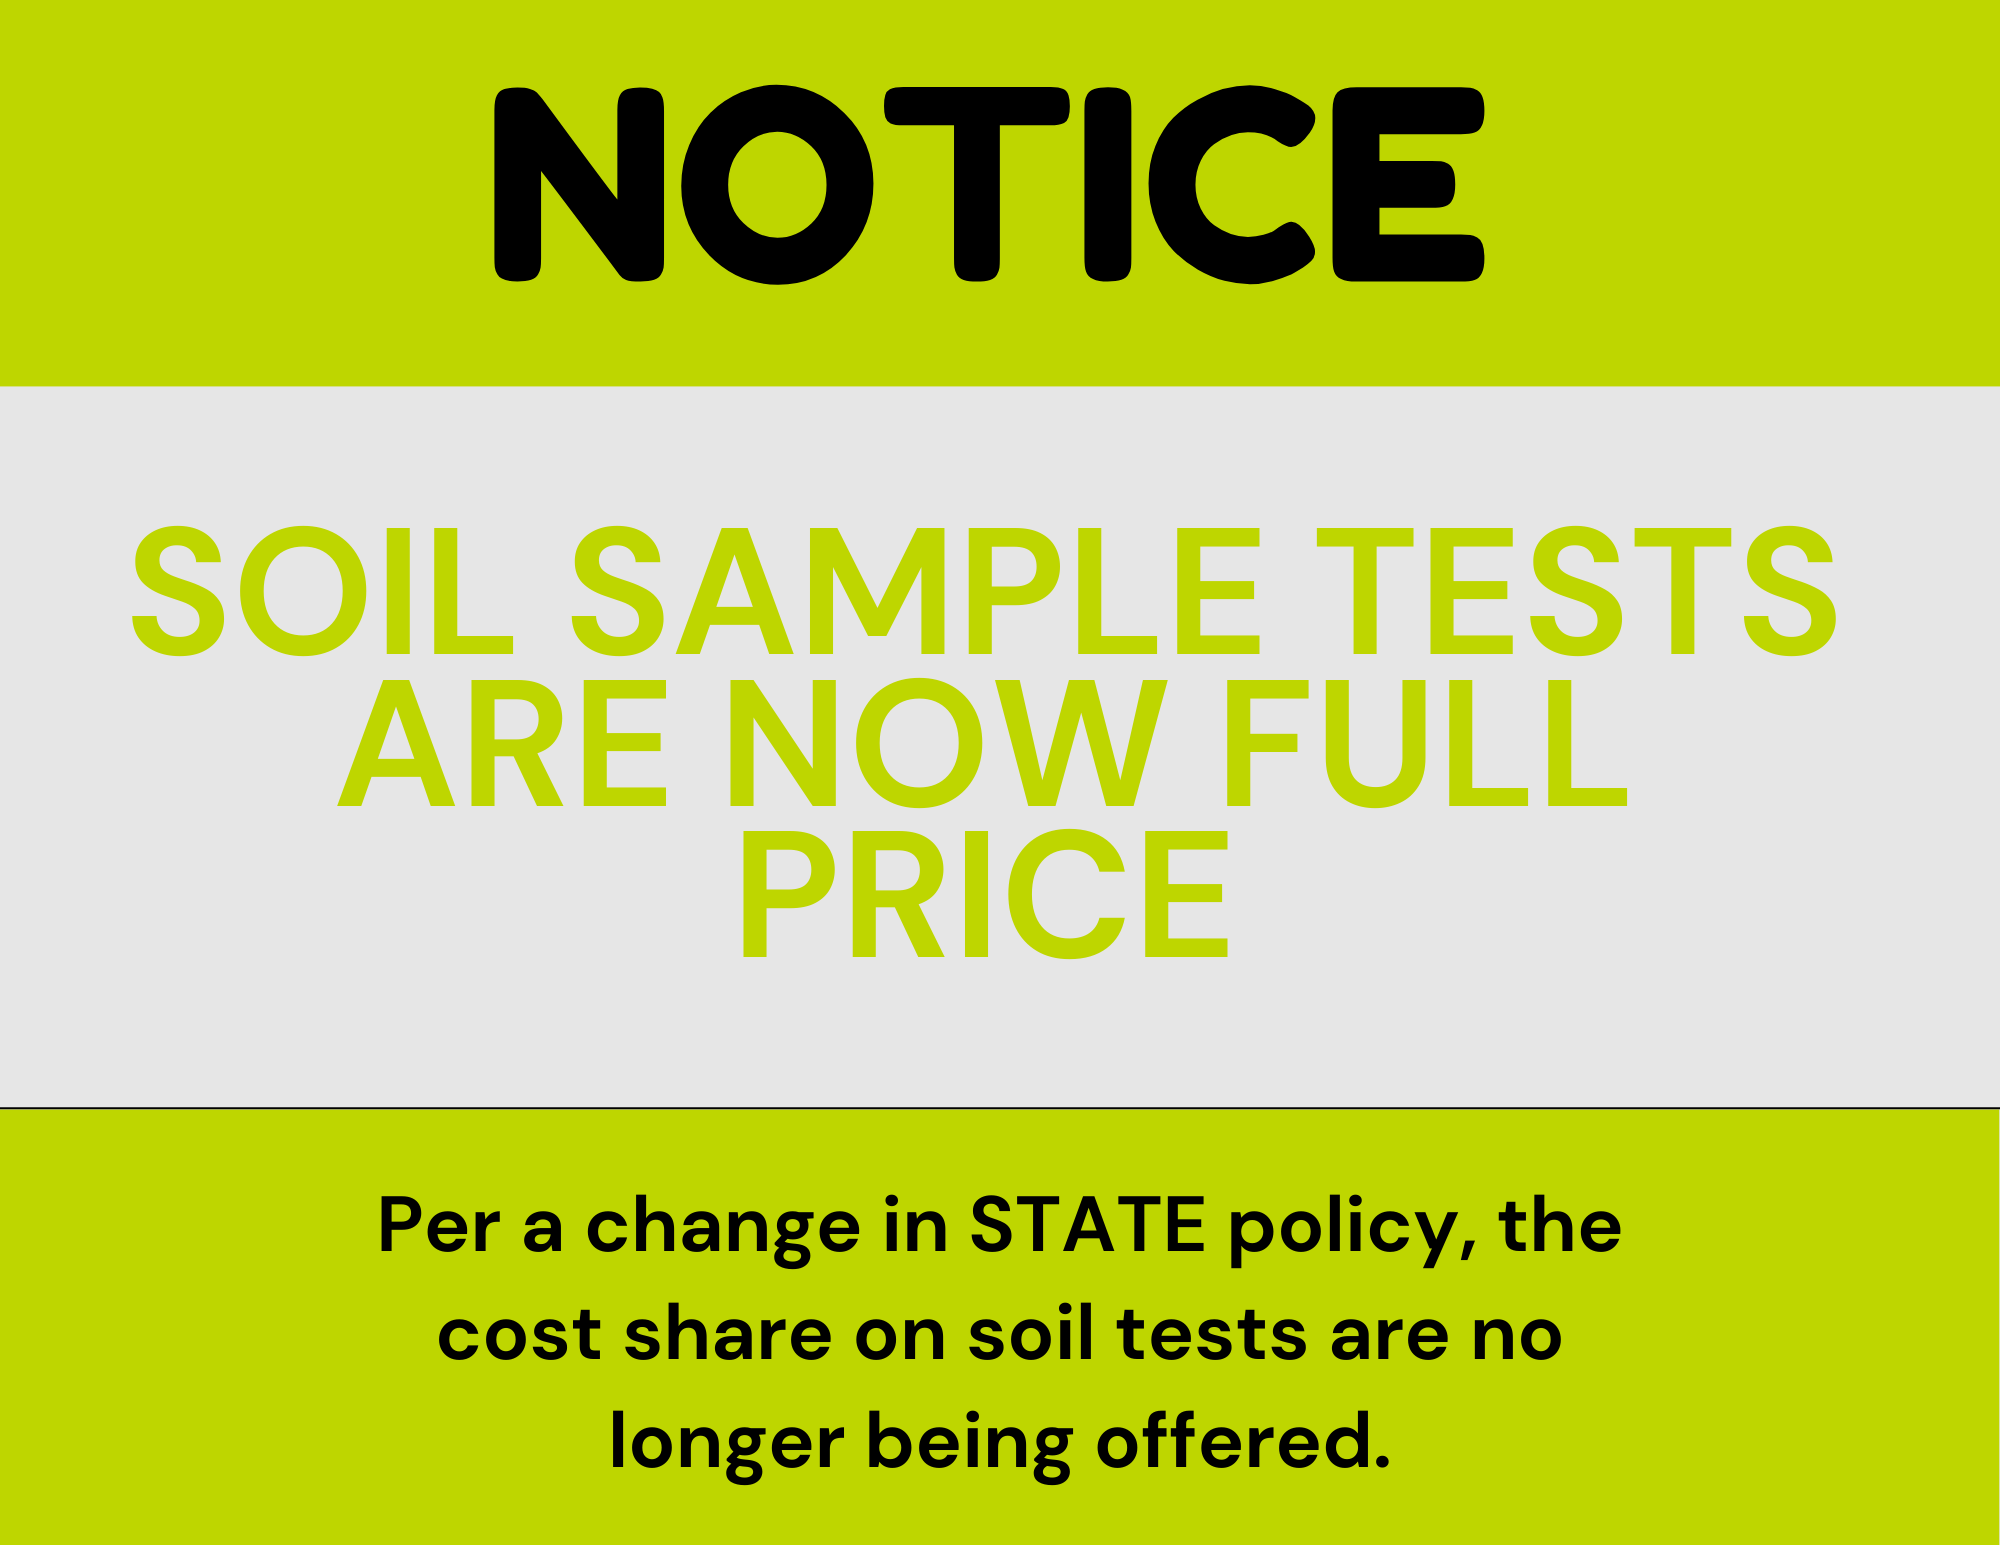 Price Change on Soil Tests